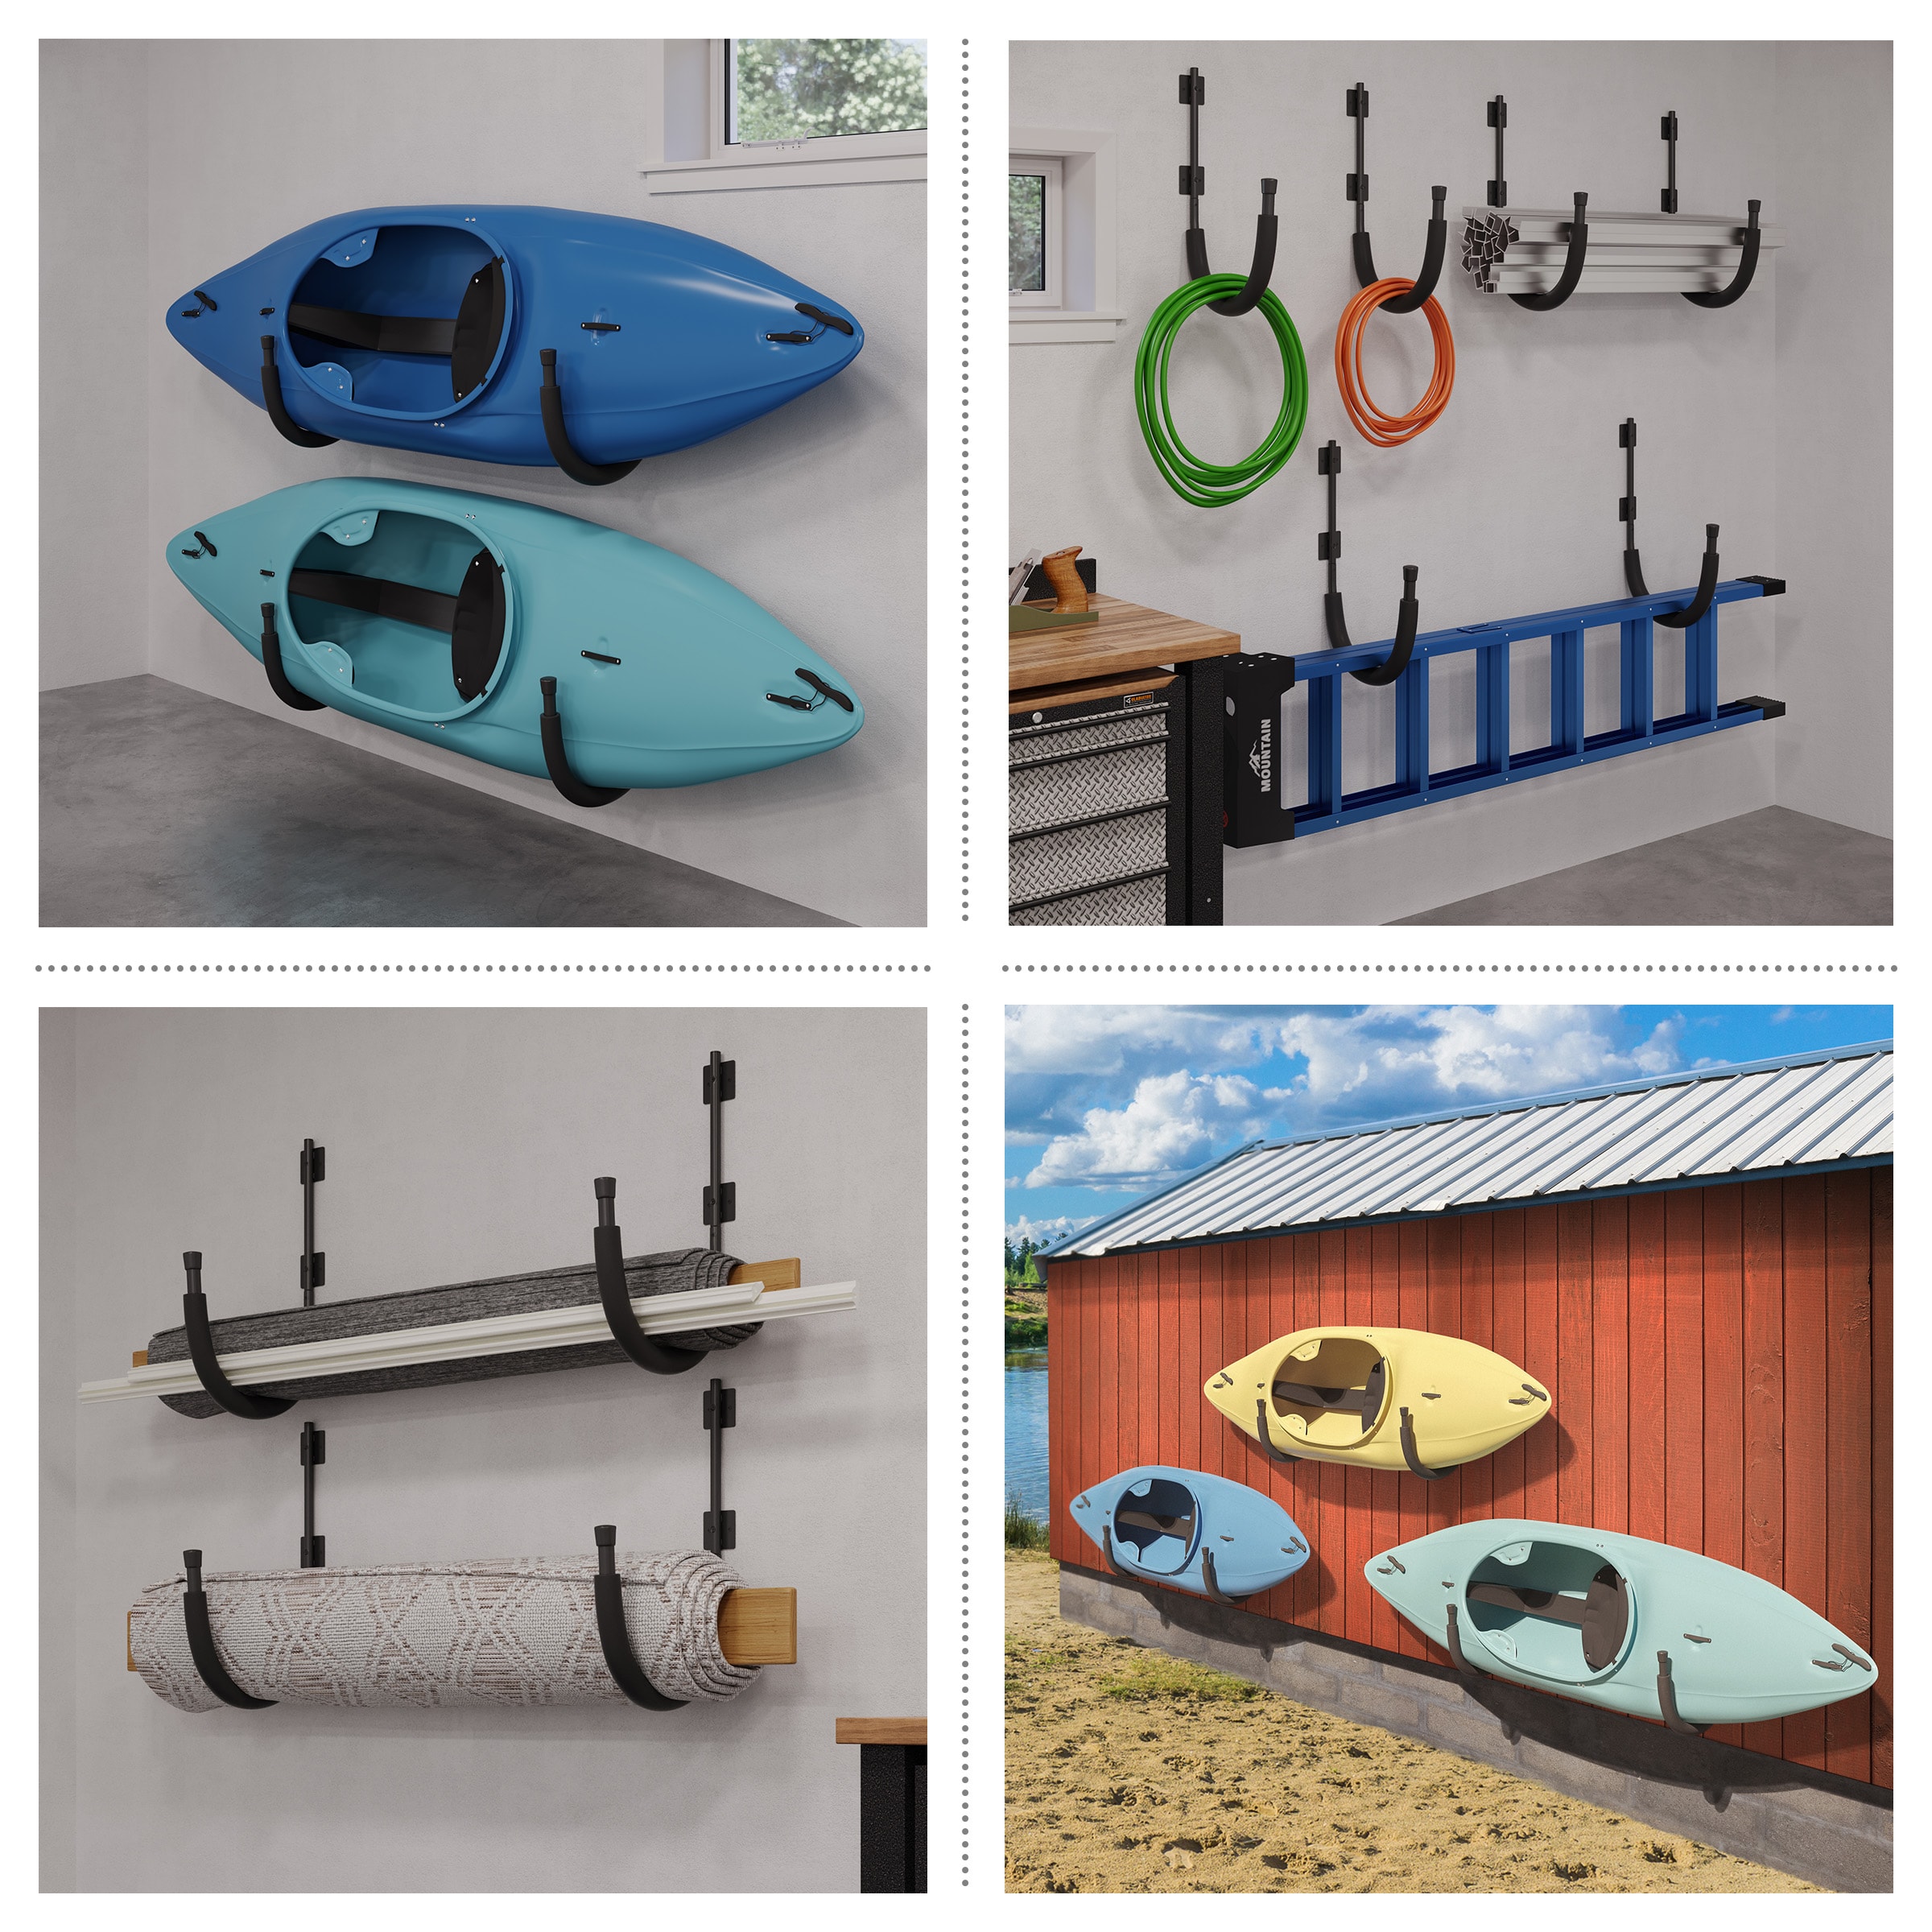 Leisure Sports Kayak Storage Wall Hooks – Set of 2, 15.25 x 3 x 25